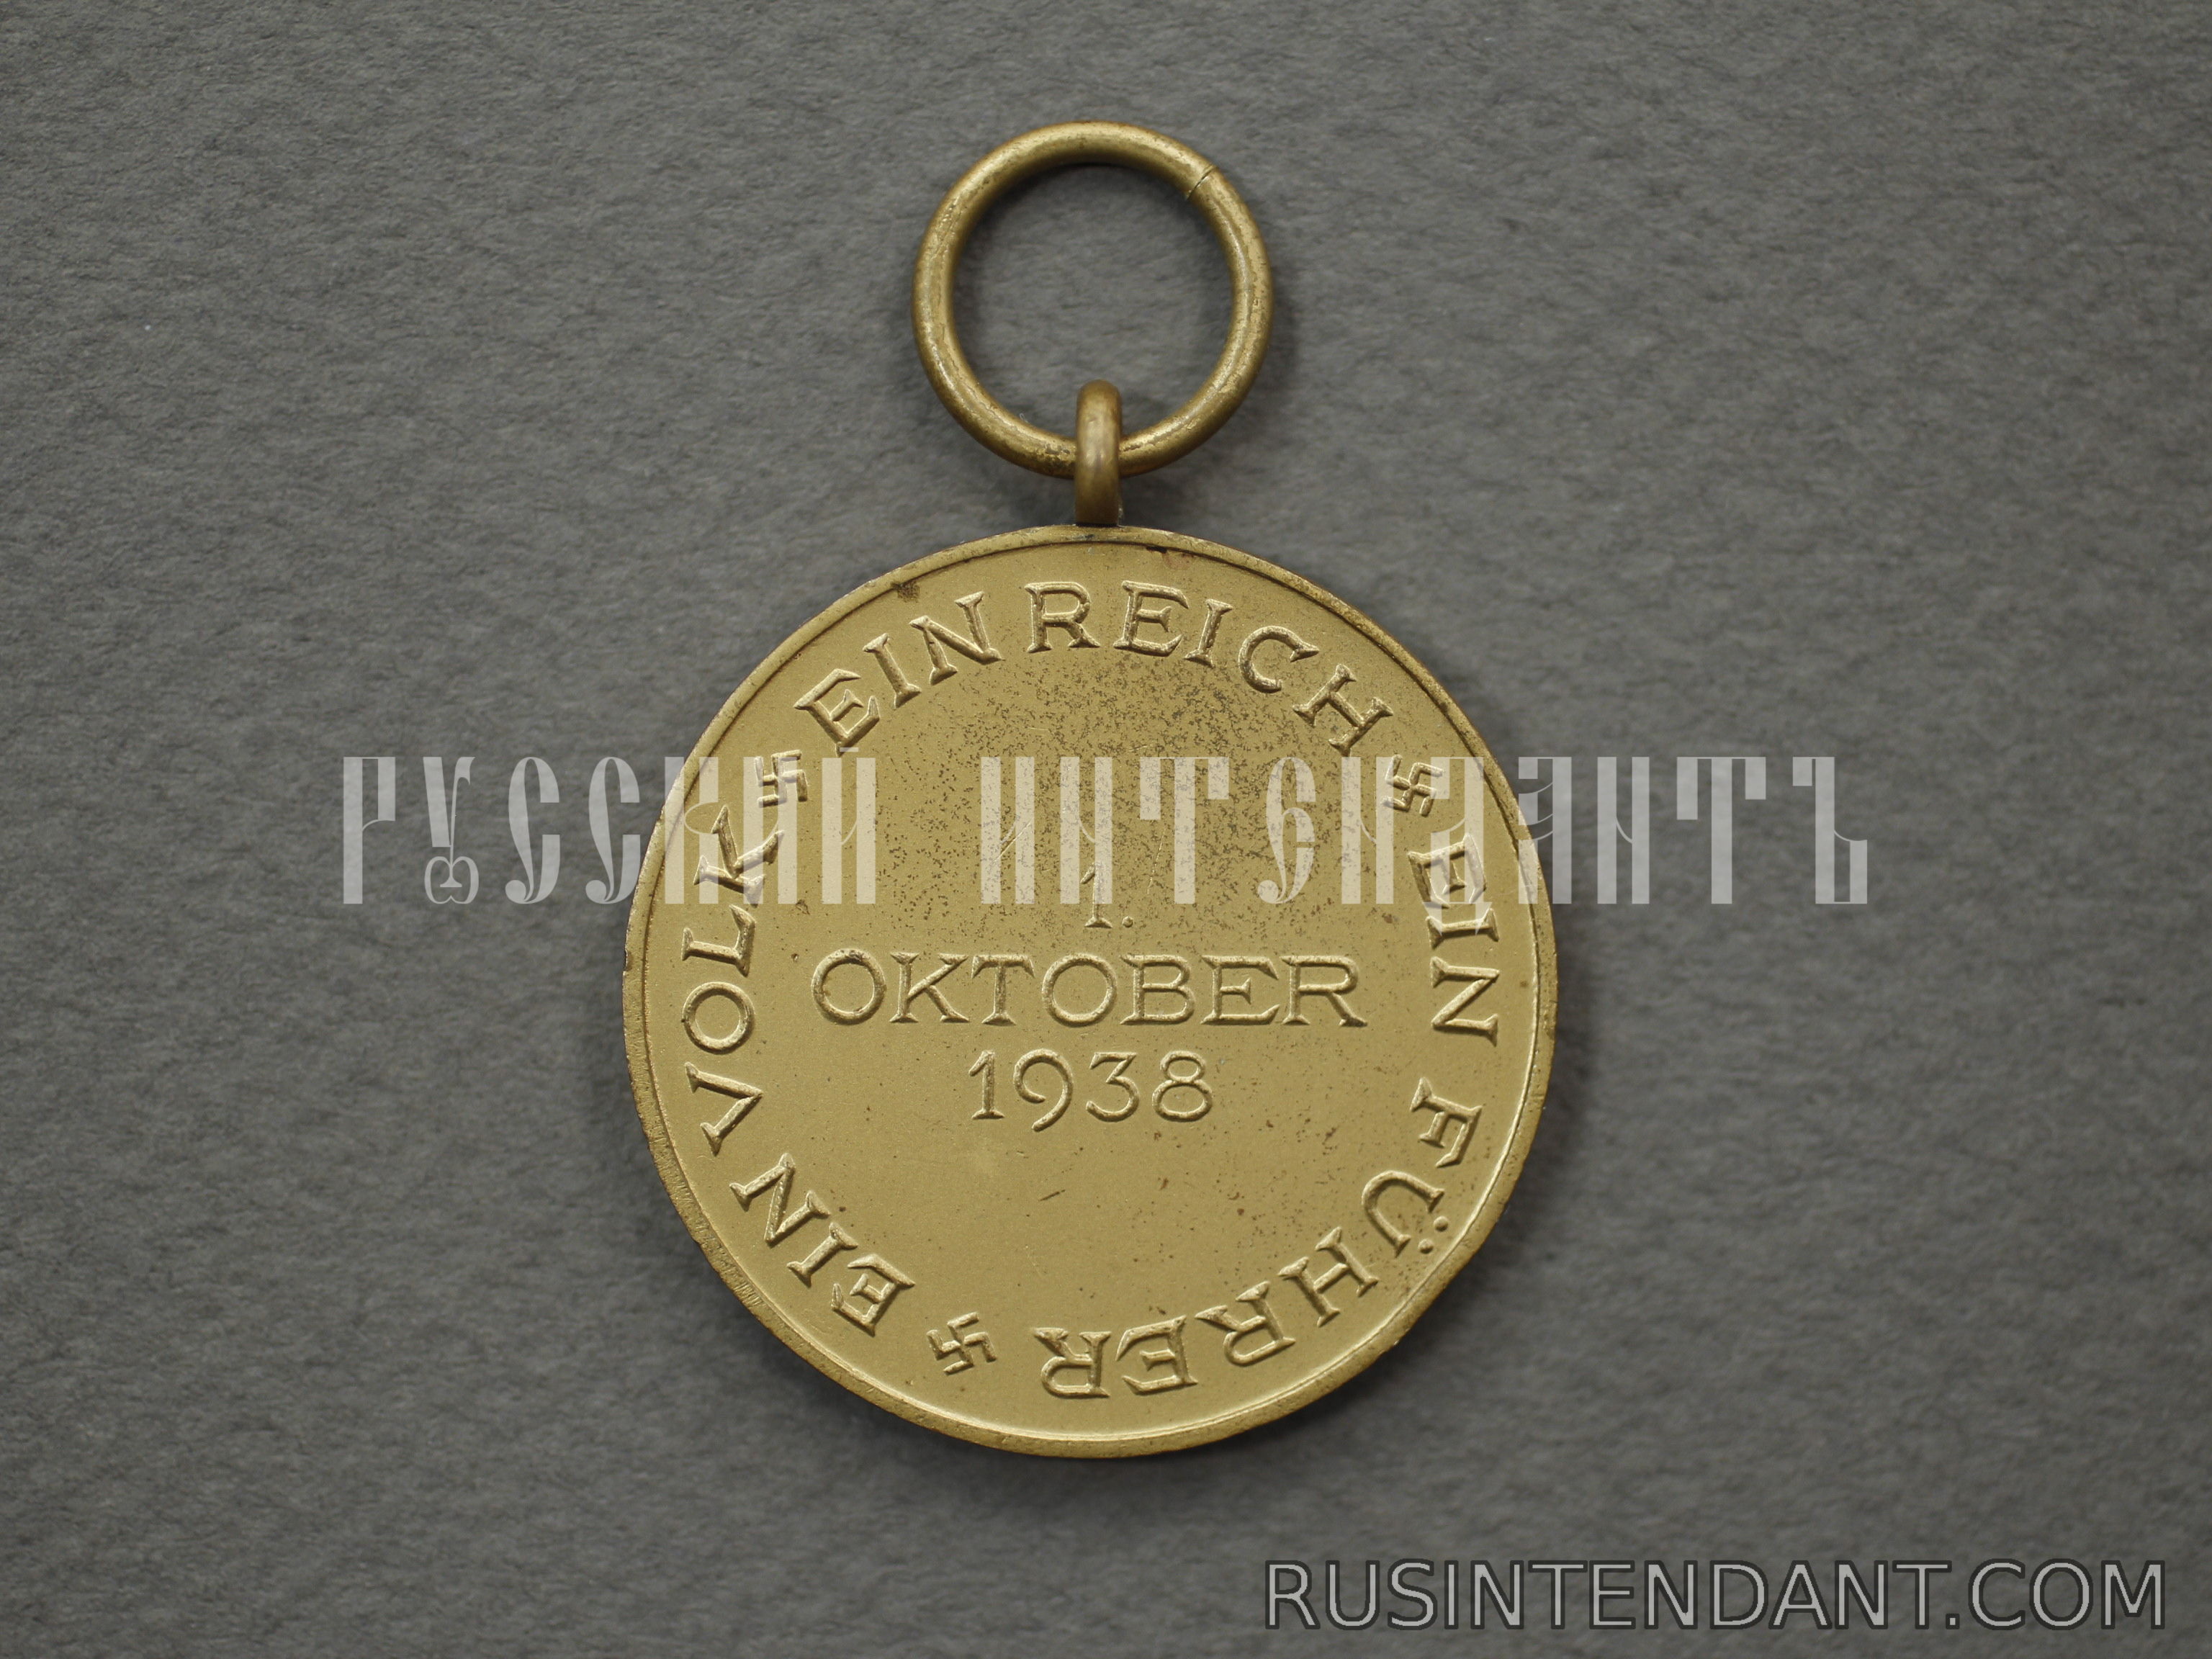 Фото 3: Медаль "В память 1 октября 1938 года" 